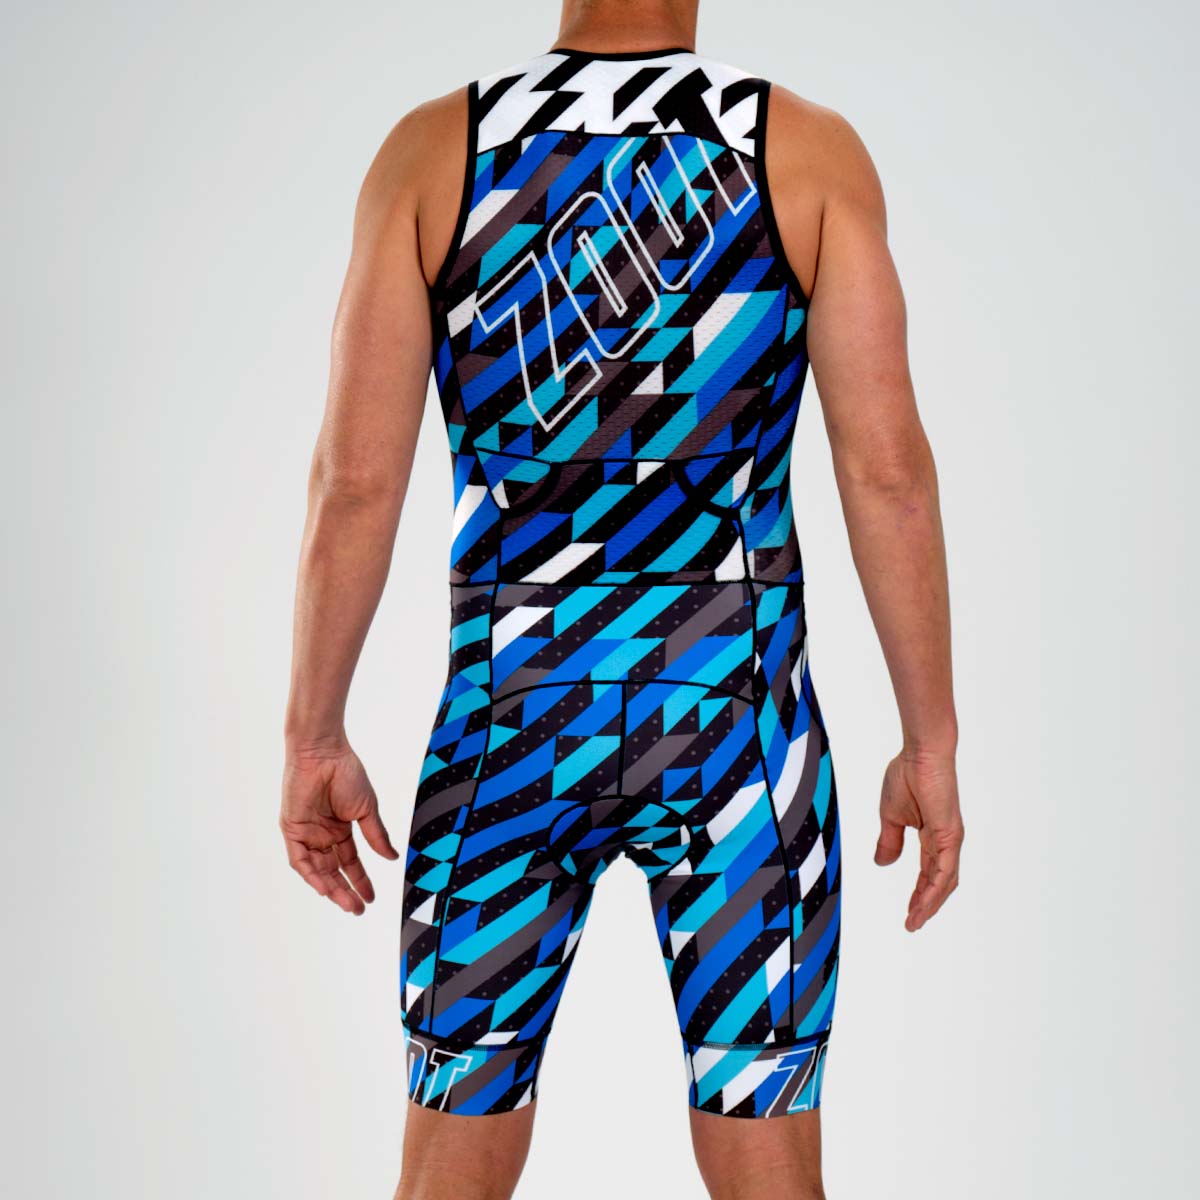  Synergy Triathlon Trisuit - Men's Race Sleeveless Tri